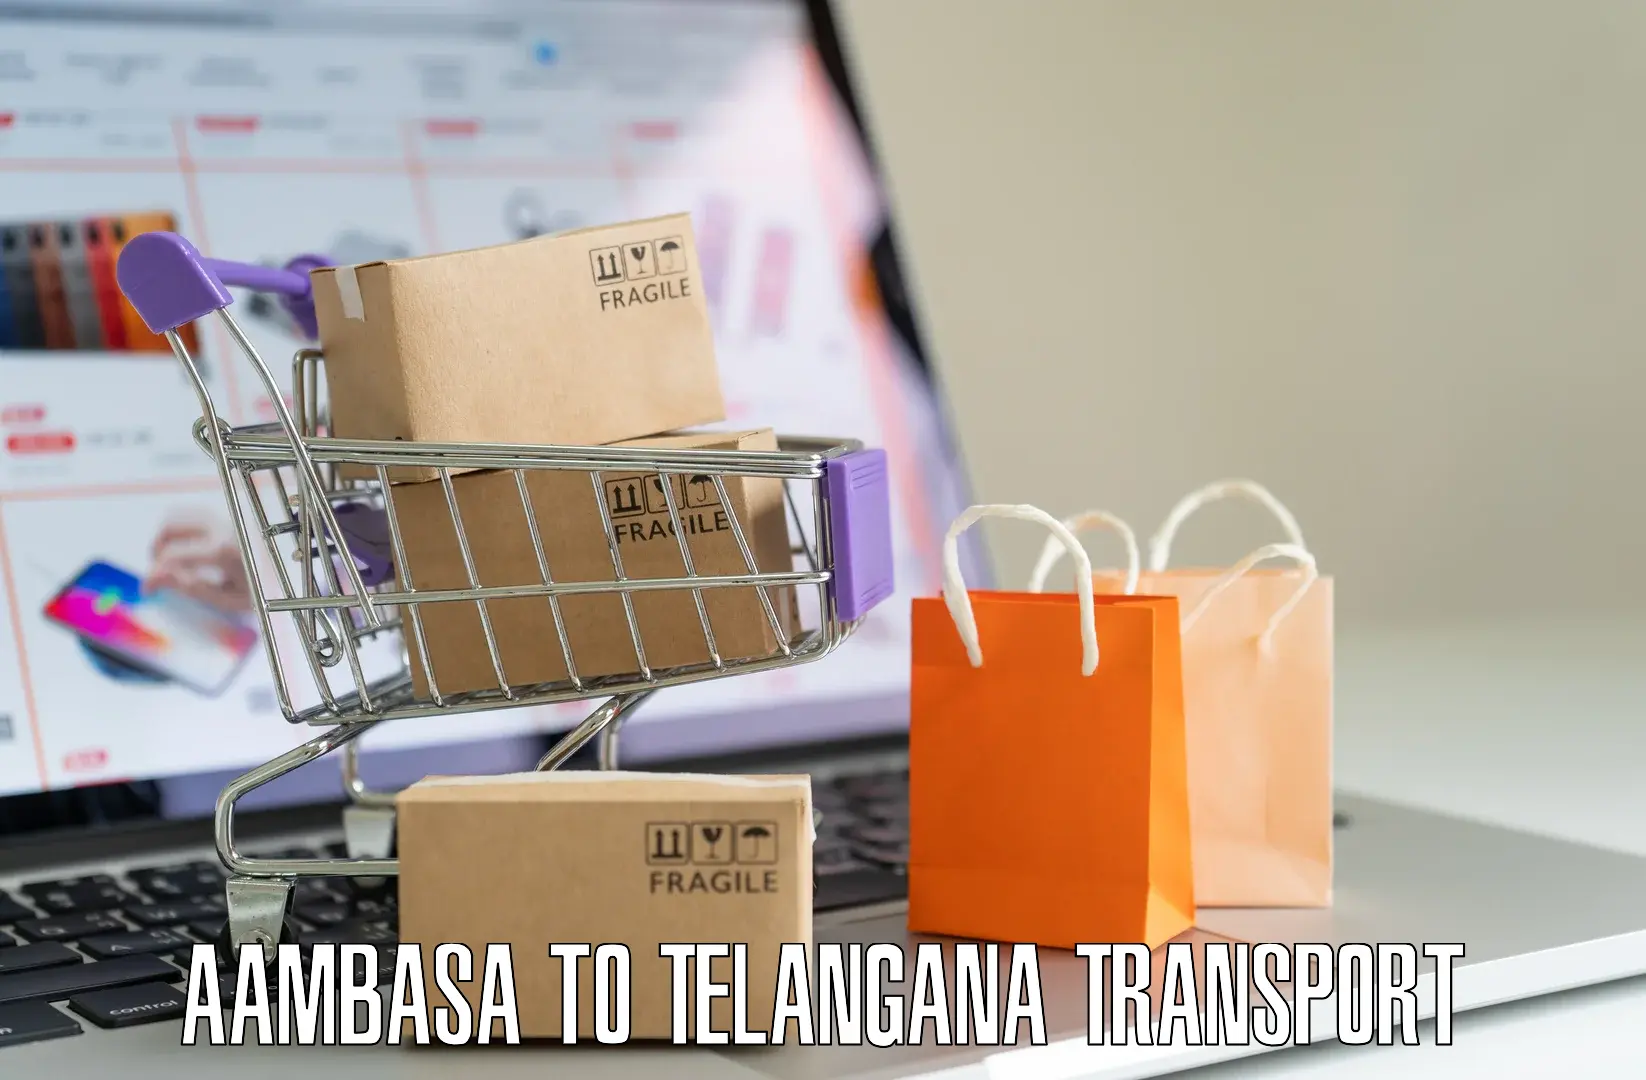 Container transport service Aambasa to Manuguru